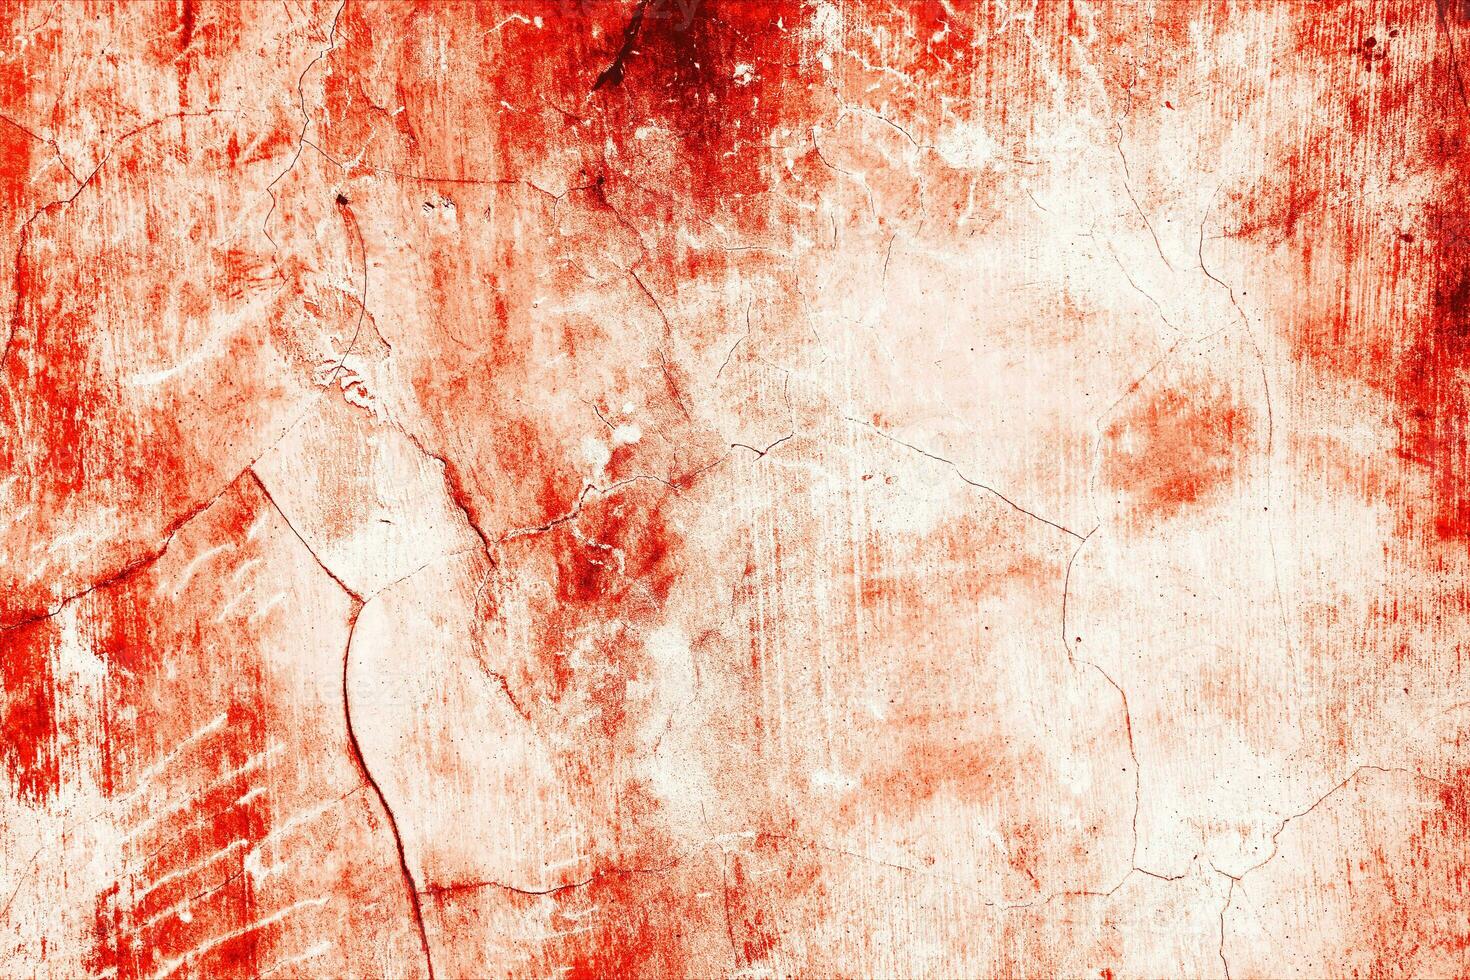 mörk röd blod på gammal vägg för halloween begrepp foto